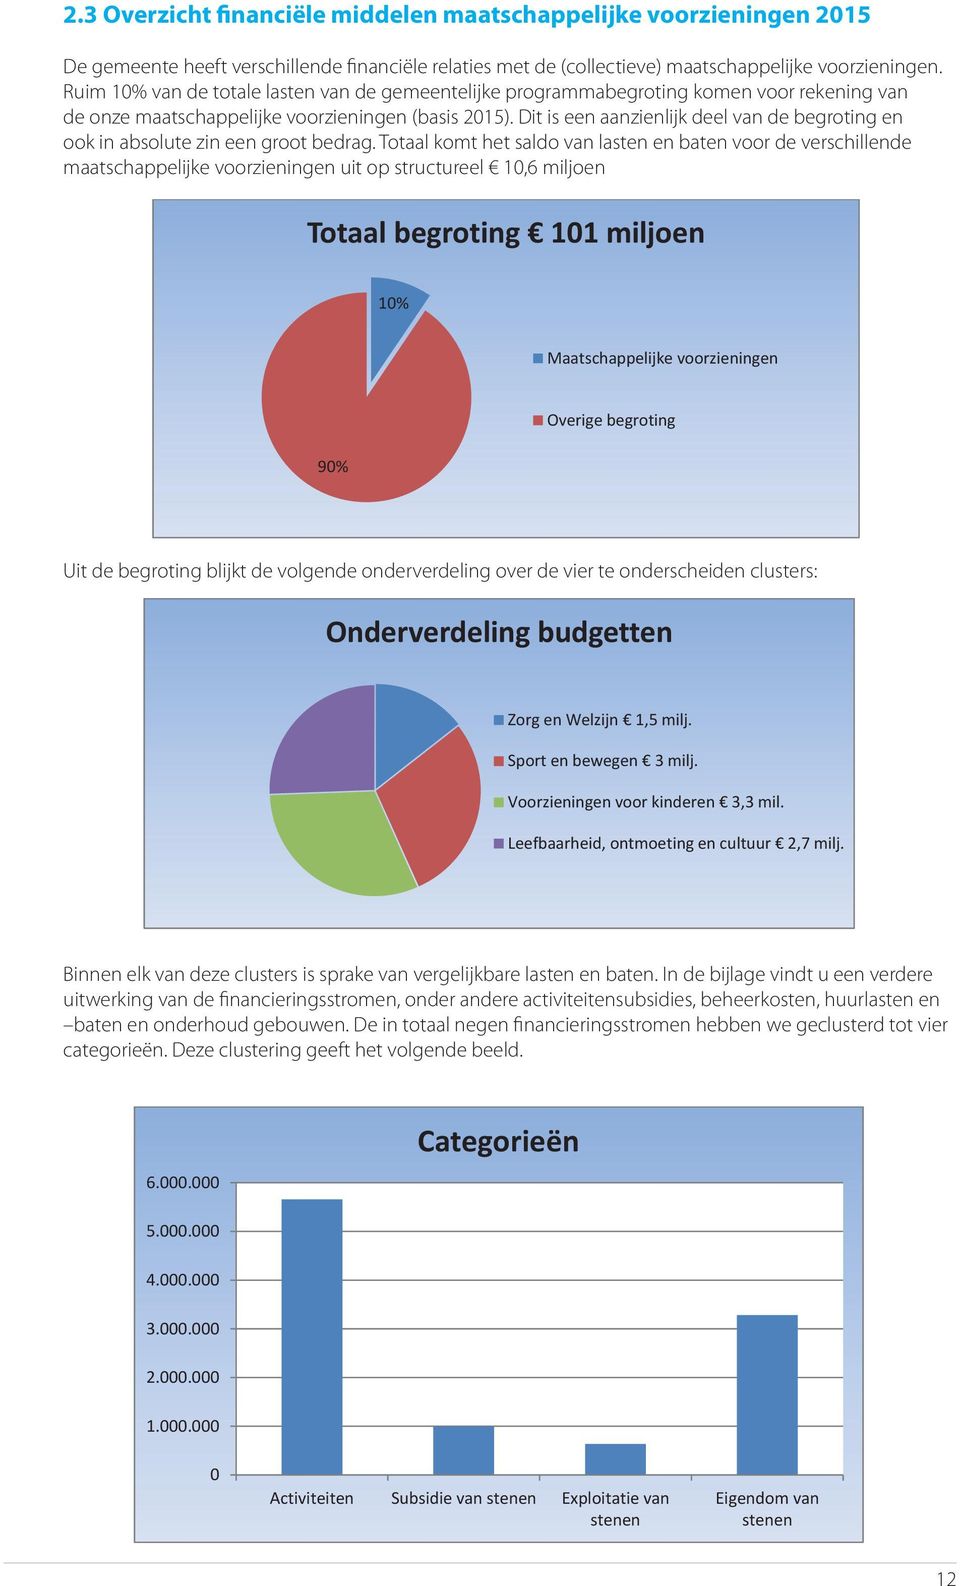 Ruim 10% van de totale lasten van de gemeentelijke programmabegroting komen voor rekening van De programmabegroting gemeente heeft verschillende (basis 2015).